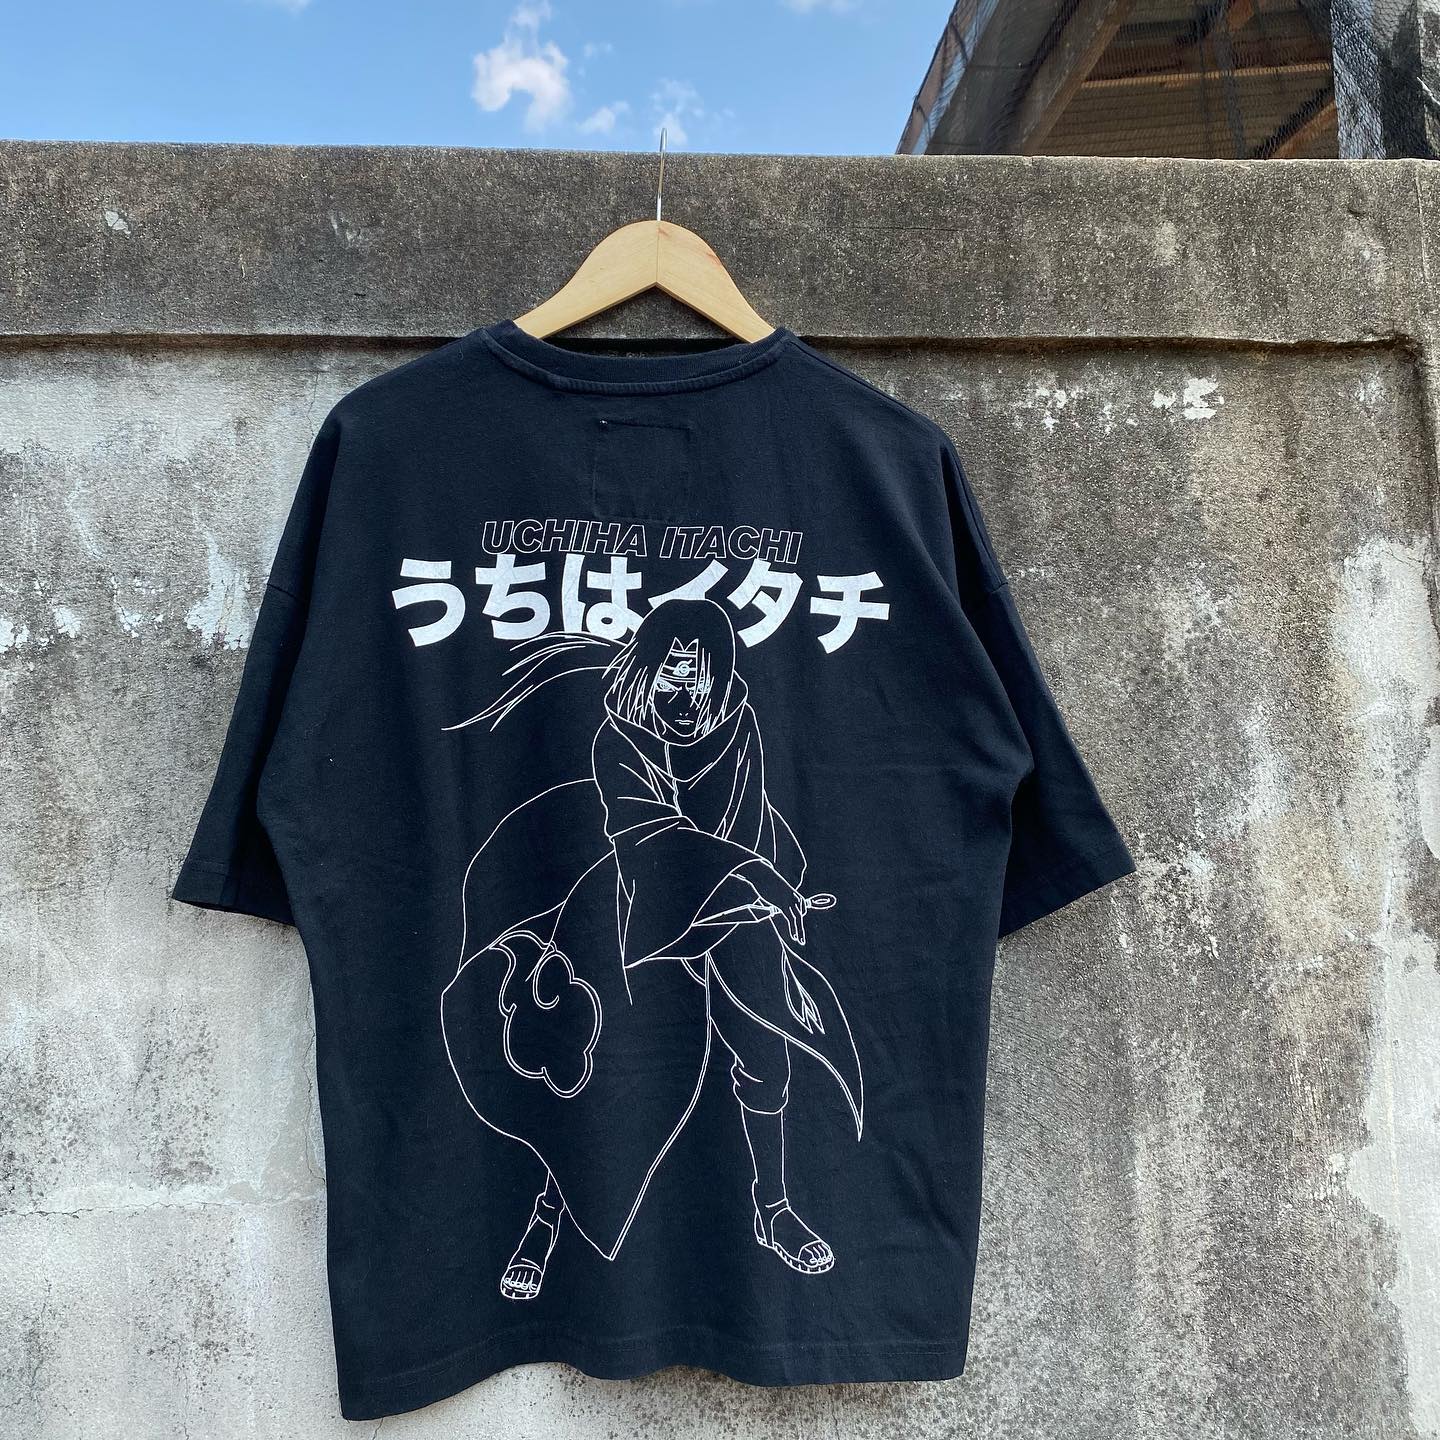 孤独星球动漫NARUTO Uchiha Itachi火影忍者宇智波鼬shirt短袖T恤